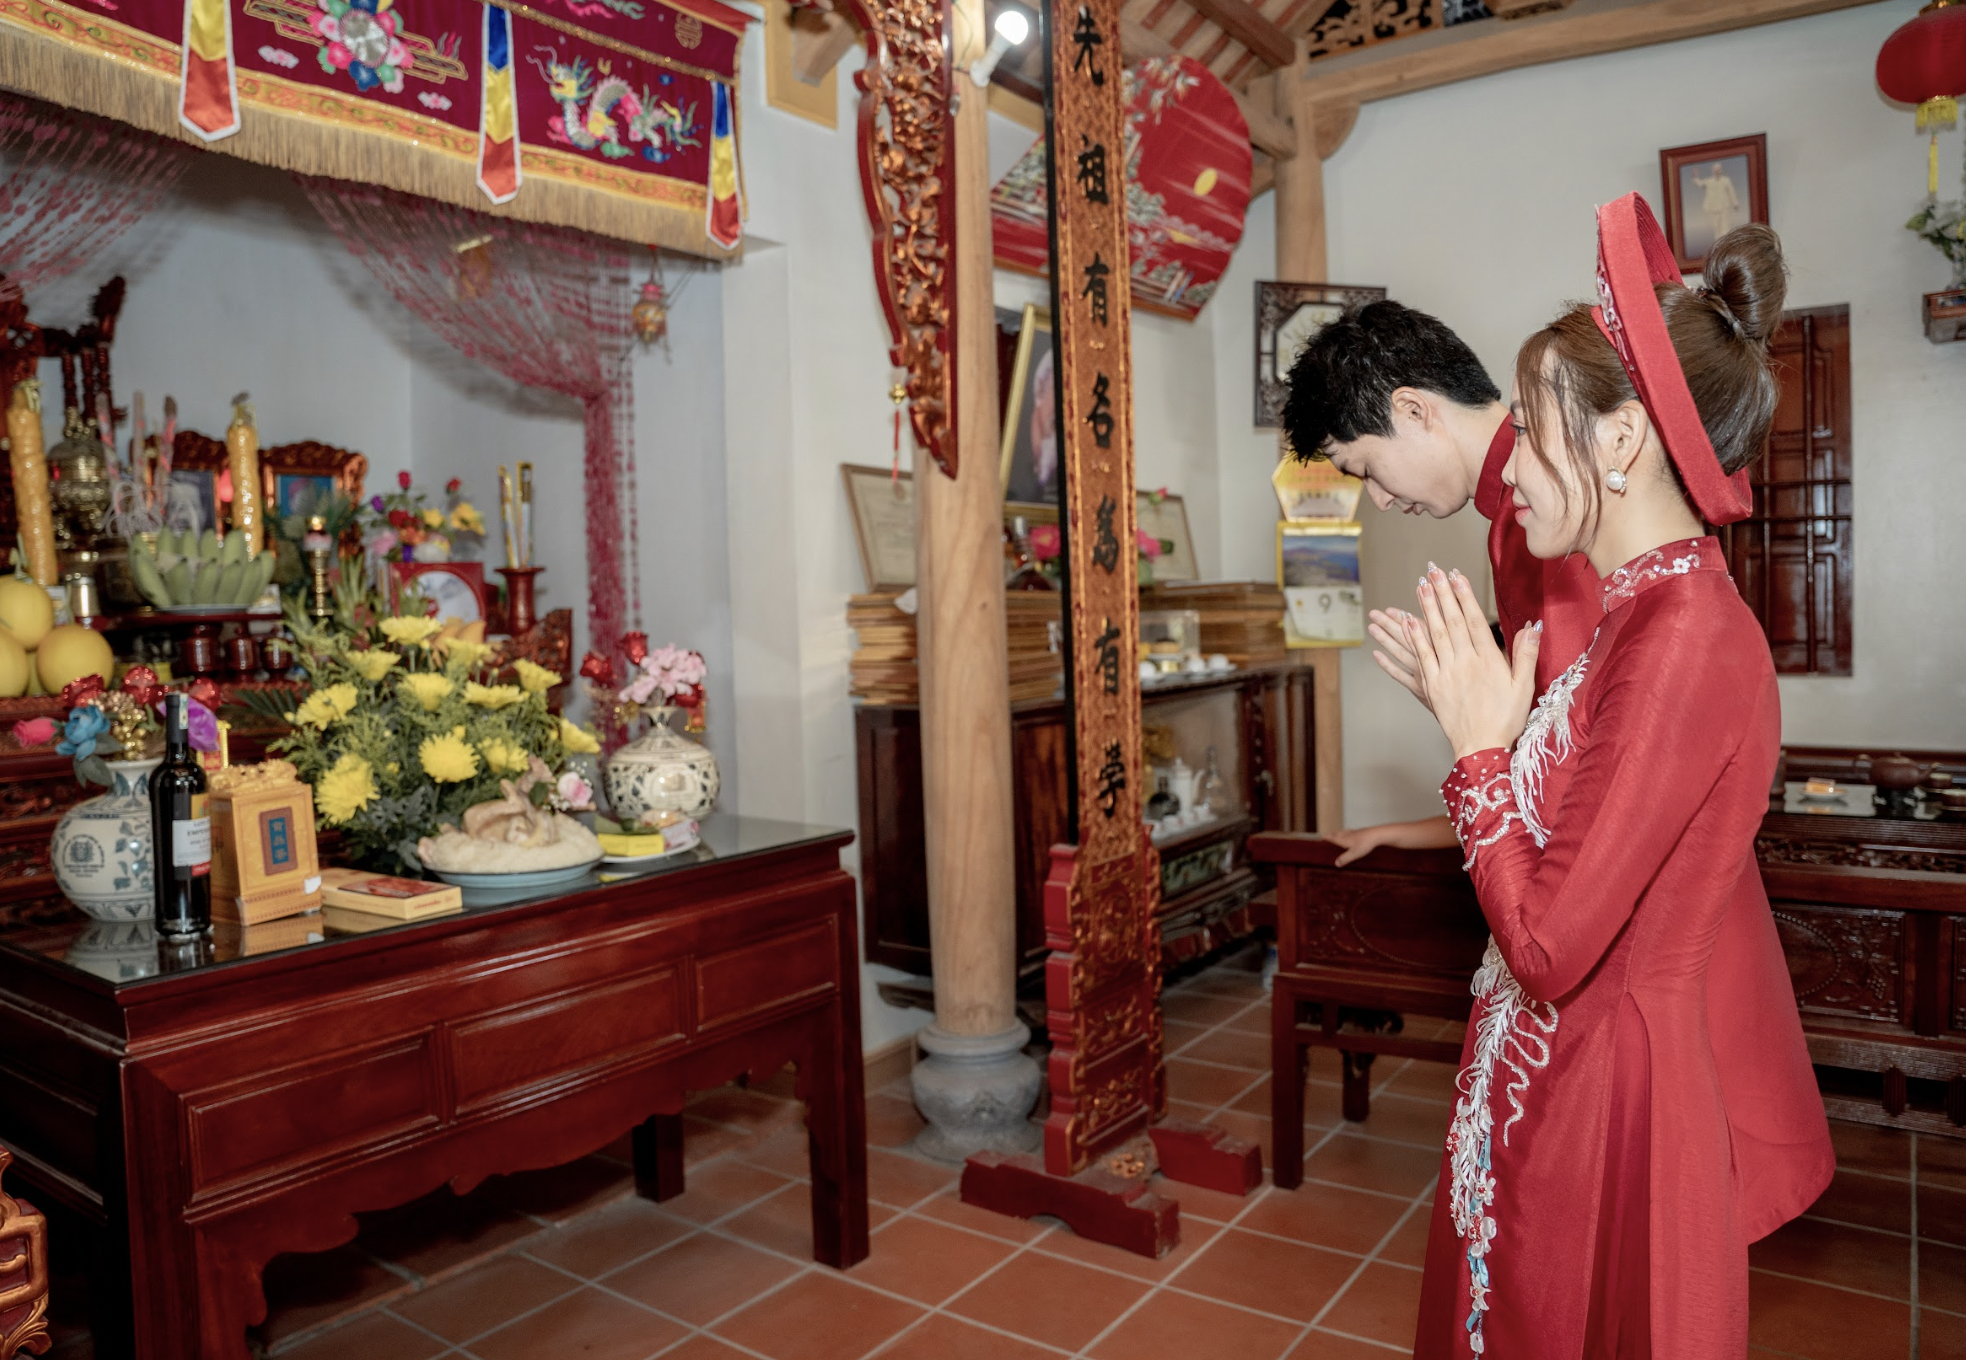 Đám cưới đặc biệt của chú rể Nhật và cô dâu Việt nhận 'mưa tim' - Ảnh 2.